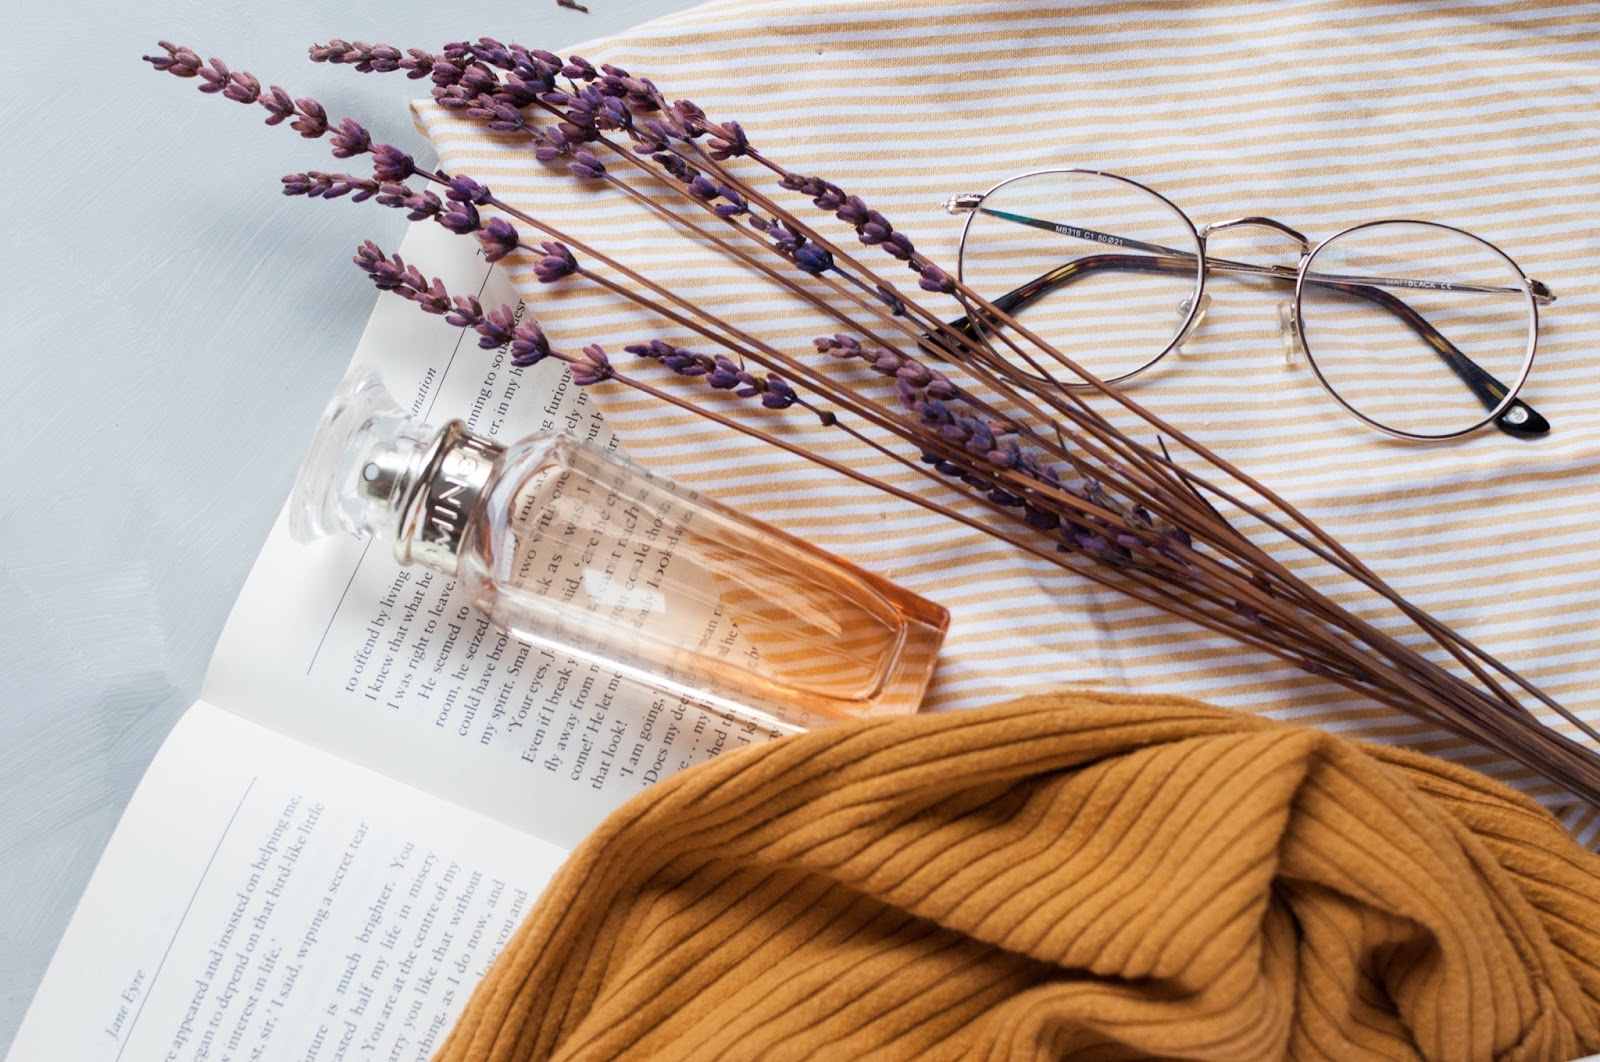 Una boccetta di profumo appoggiata sul libro con alcune decorazioni come occhiali e sciarpa